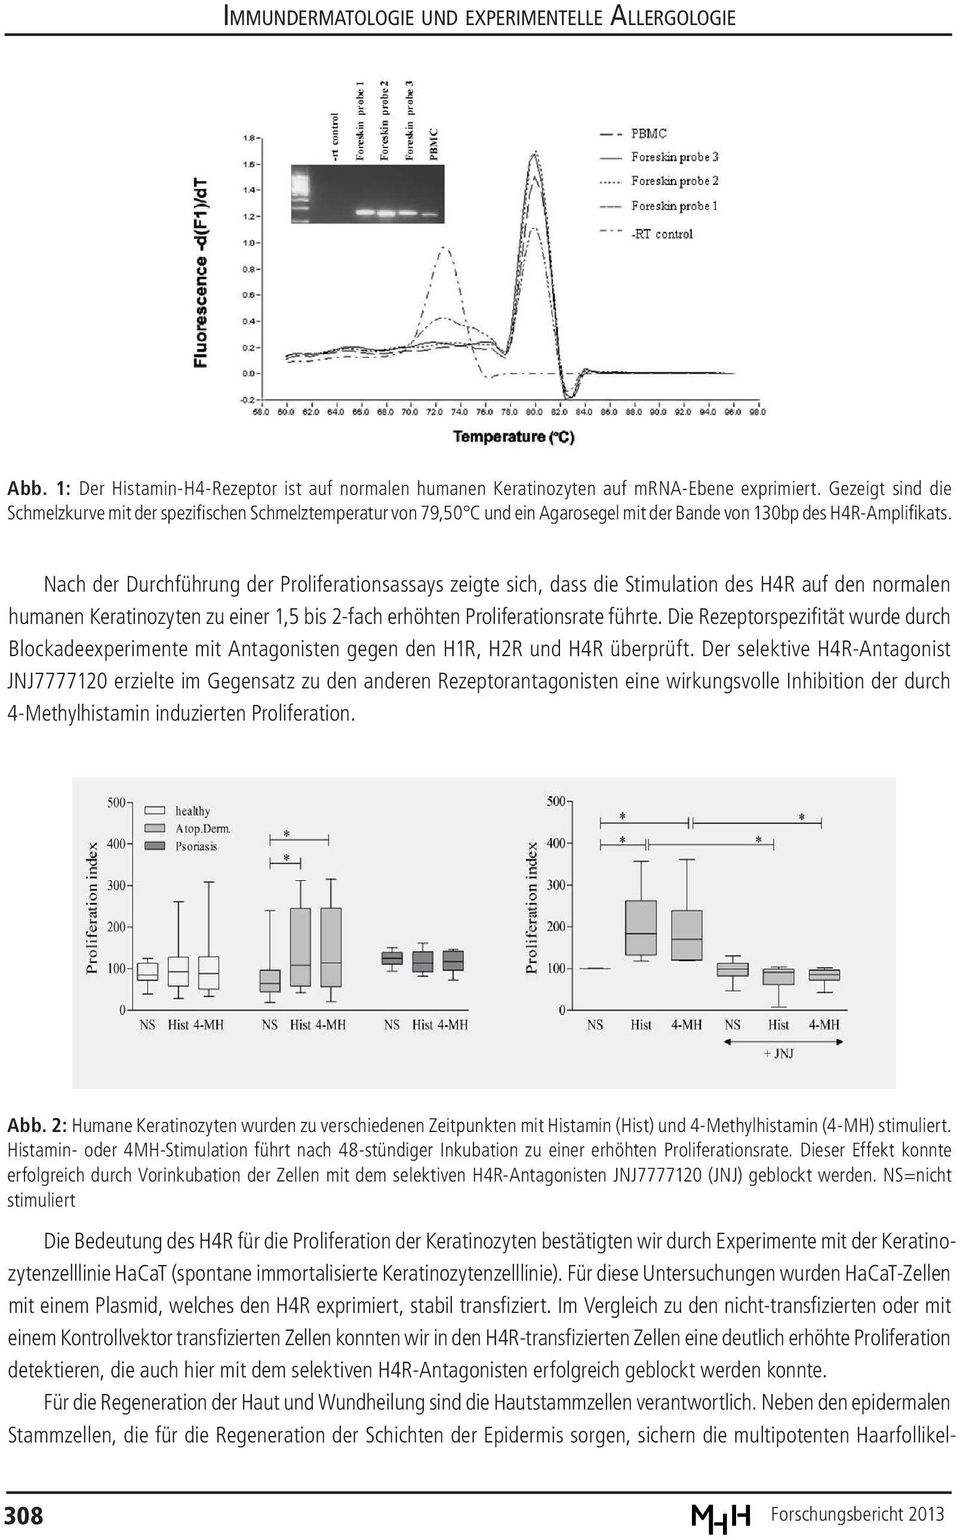 Nach der Durchführung der Proliferationsassays zeigte sich, dass die Stimulation des H4R auf den normalen humanen Keratinozyten zu einer 1,5 bis 2-fach erhöhten Proliferationsrate führte.